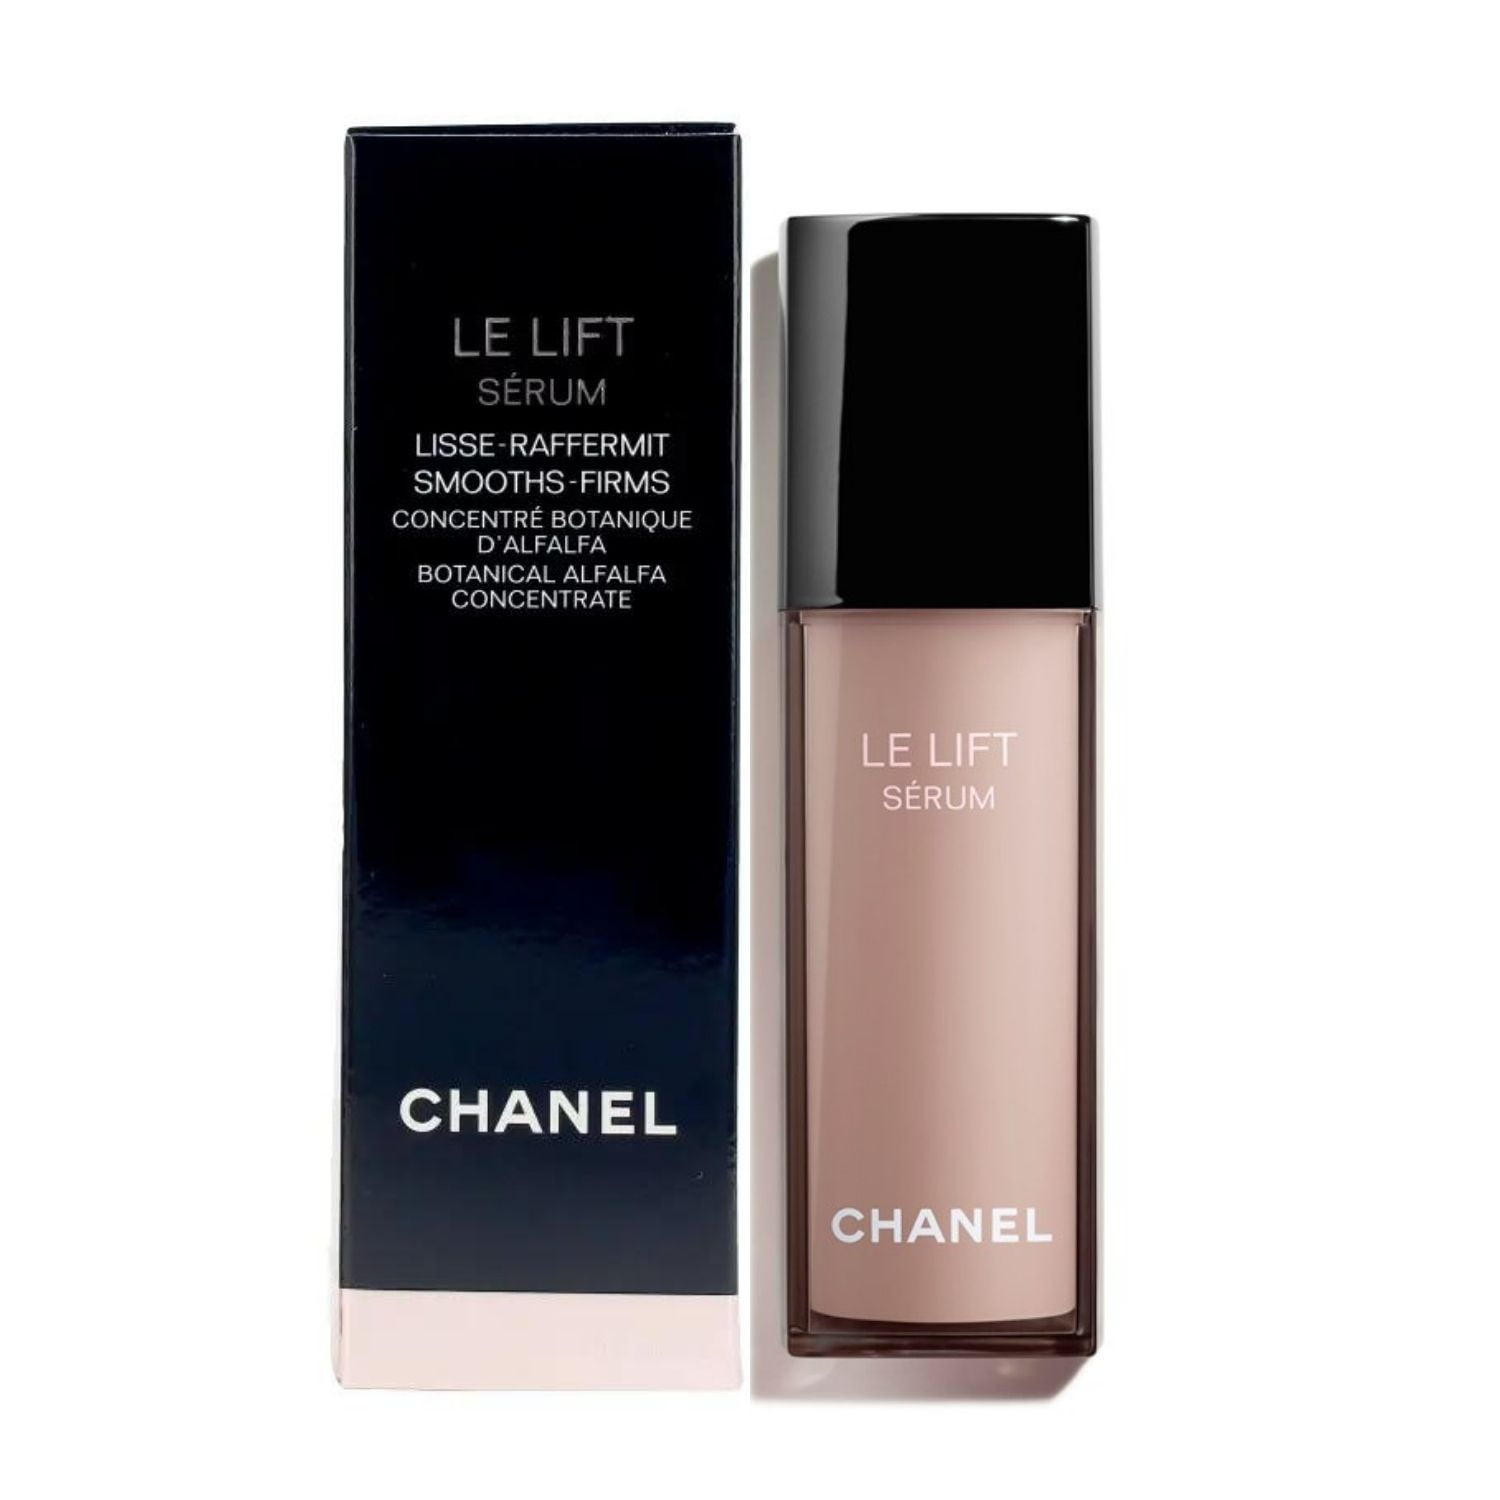 Chanel Le Lift Serum Sample 0.03 oz Set Of 2